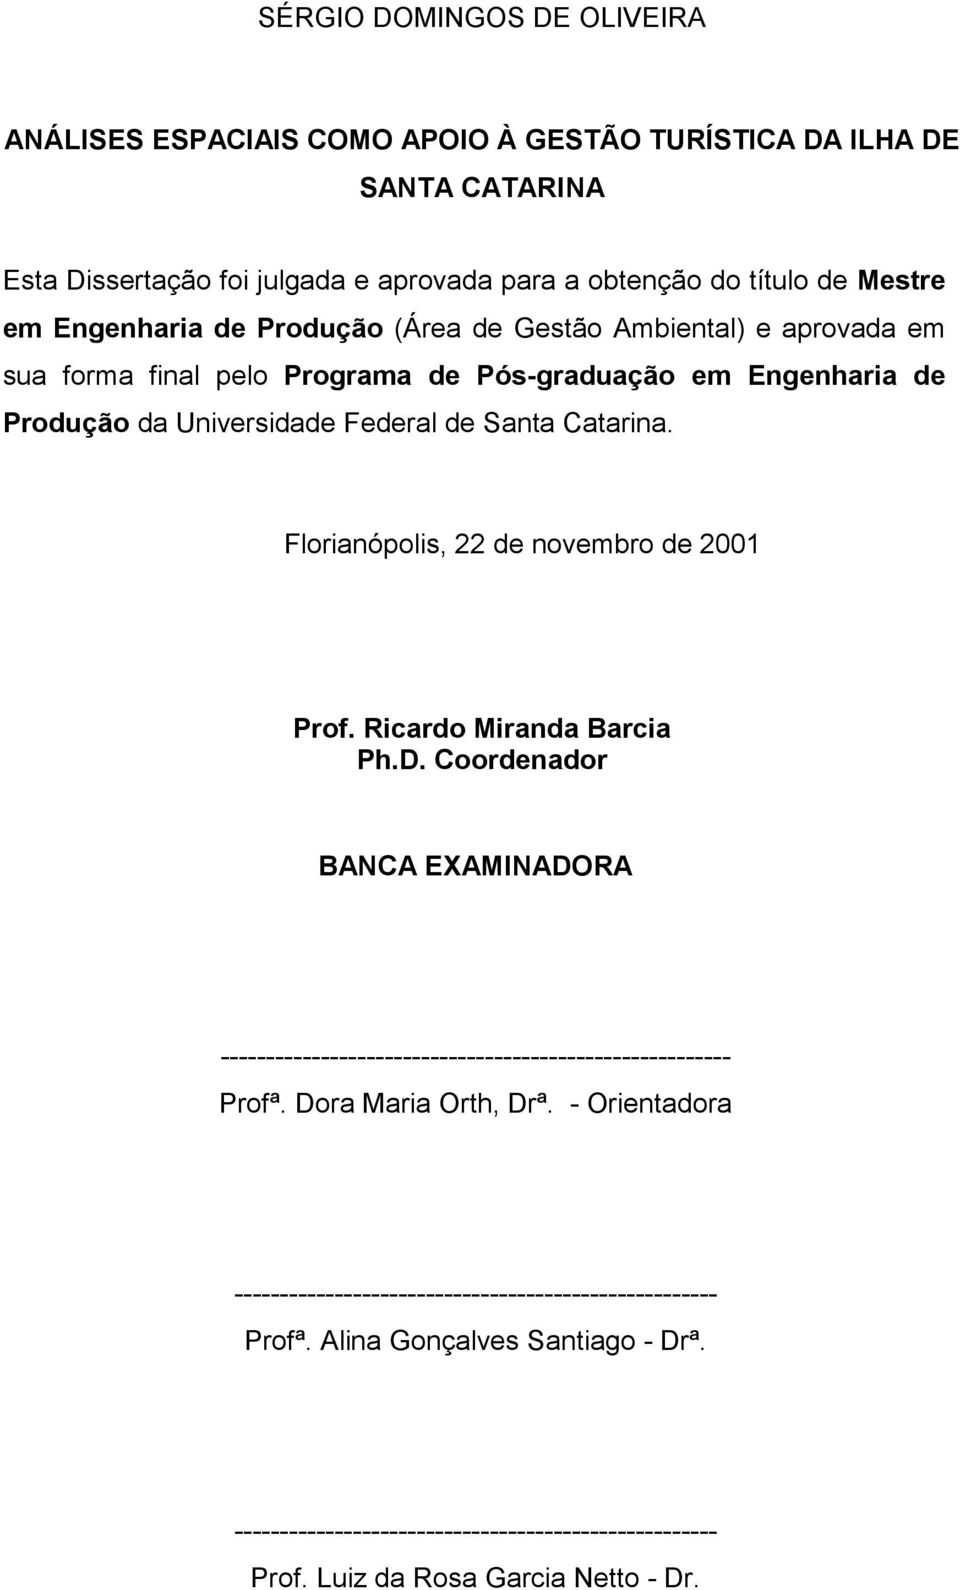 Florianópolis, 22 de novembro de 2001 Prof. Ricardo Miranda Barcia Ph.D. Coordenador BANCA EXAMINADORA -------------------------------------------------------- Profª. Dora Maria Orth, Drª.